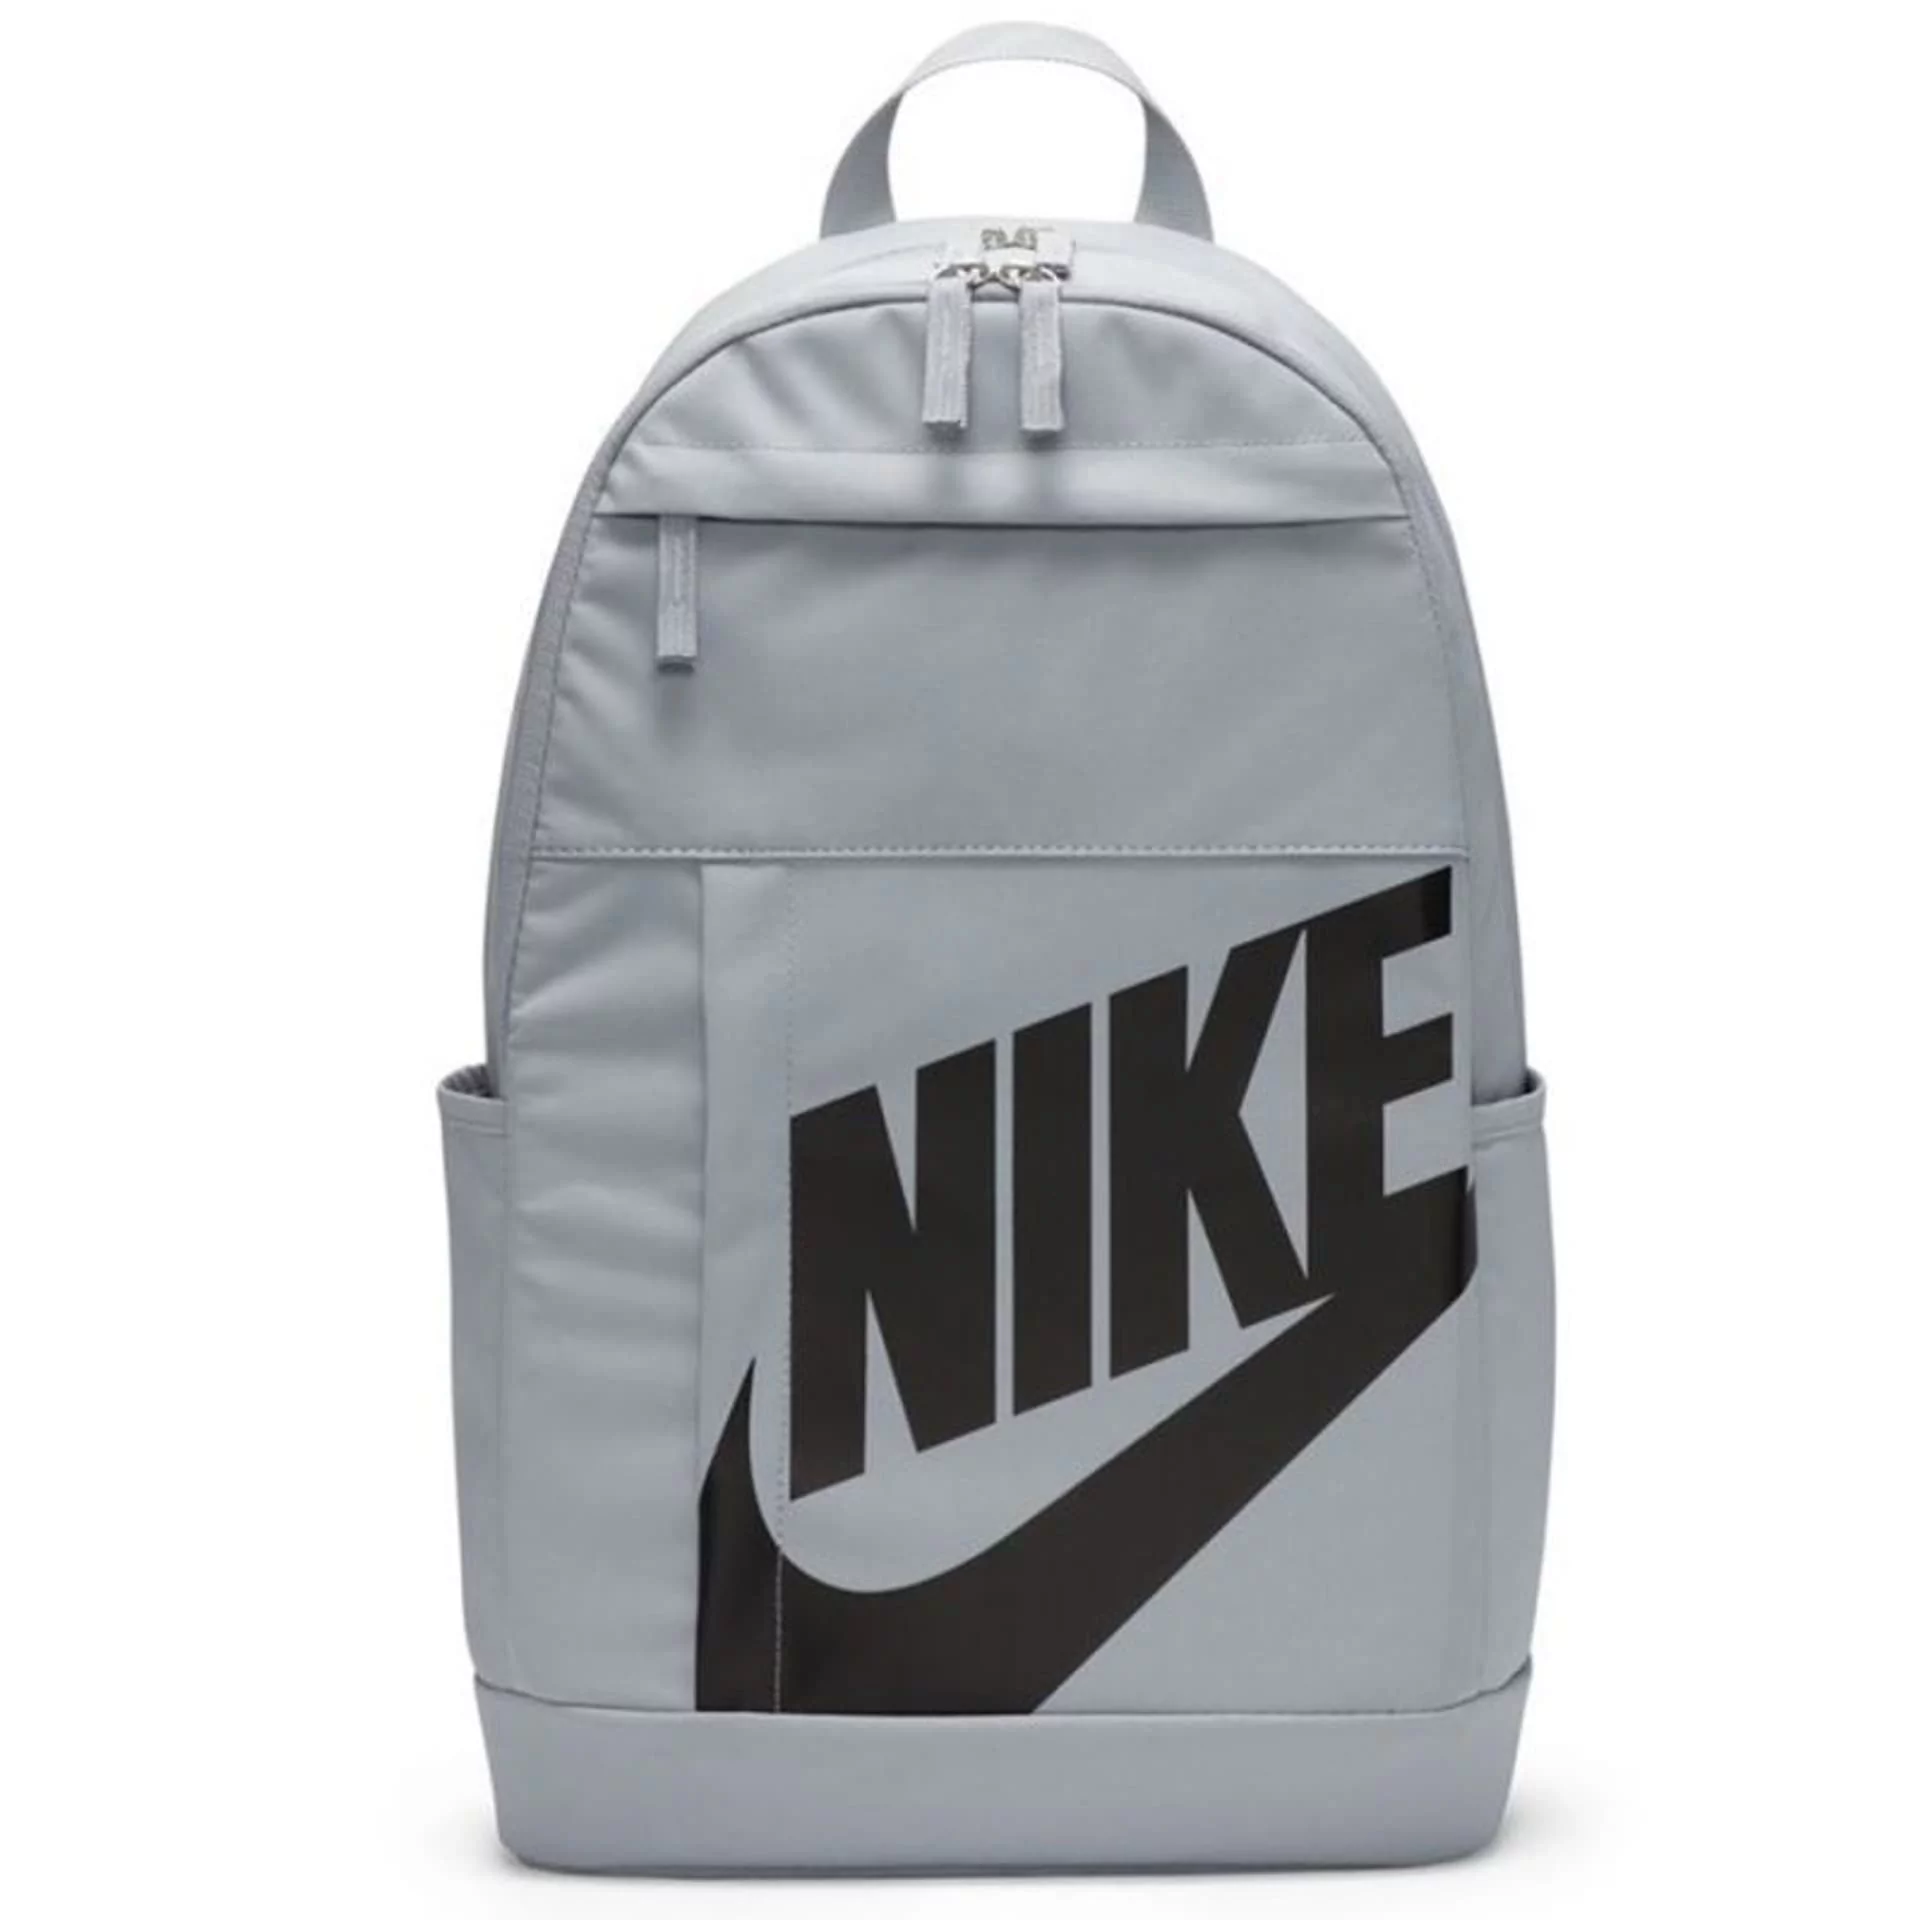 Plecak Nike Elemental DD0559 (kolor szary)